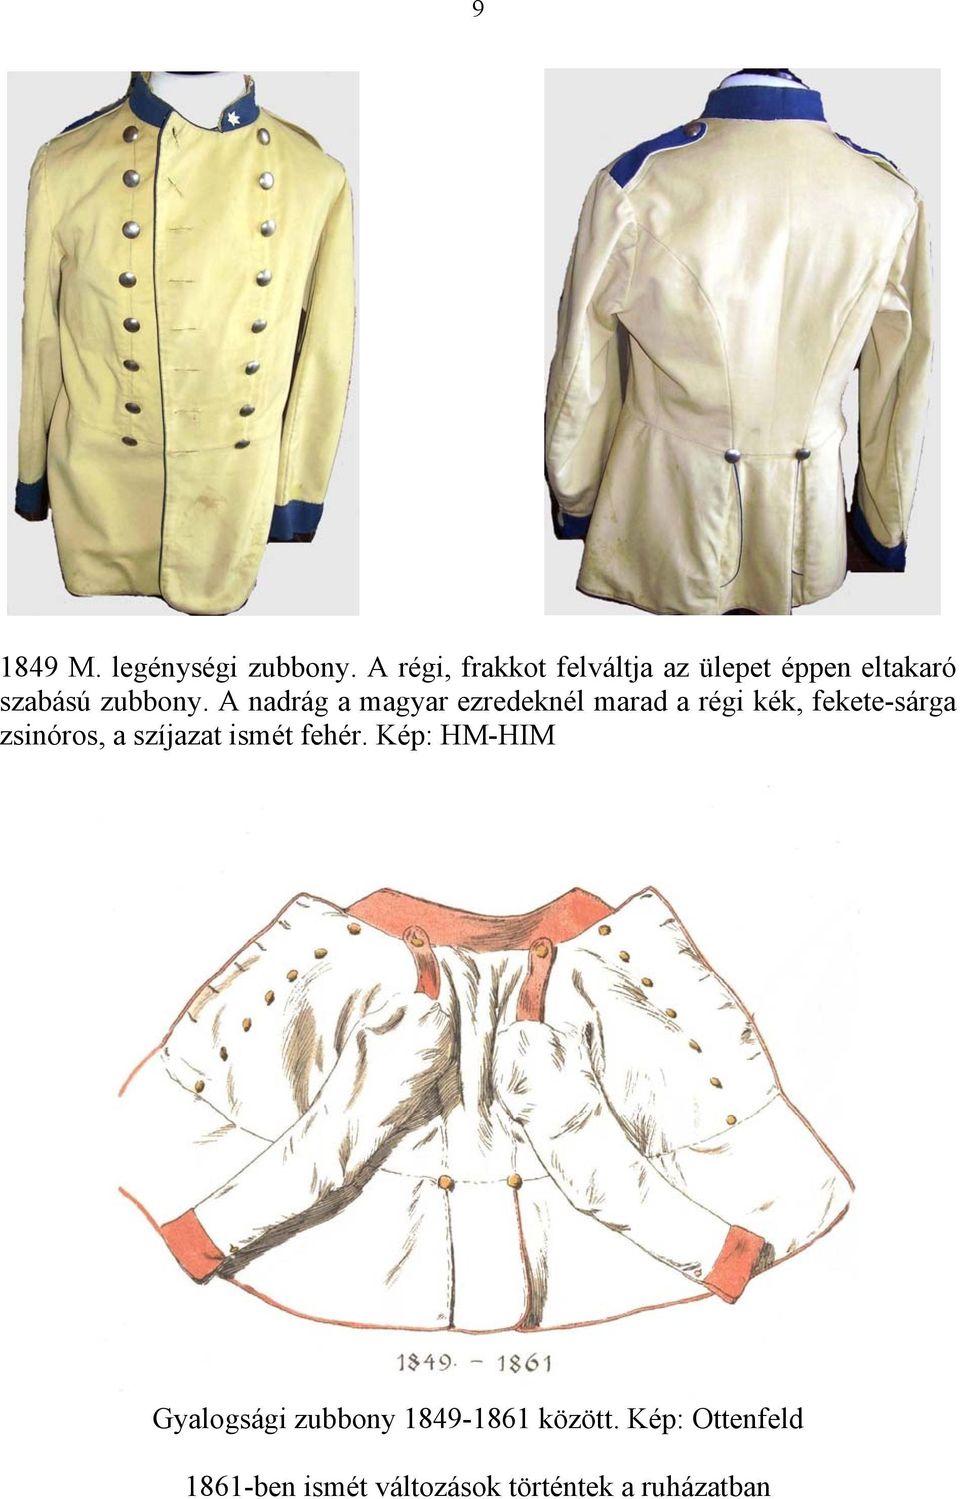 Ízelítő a magyar gyalogság egyenruháiból az 1800-as években Csak belső  használatra összeállította: Udovecz György - PDF Ingyenes letöltés